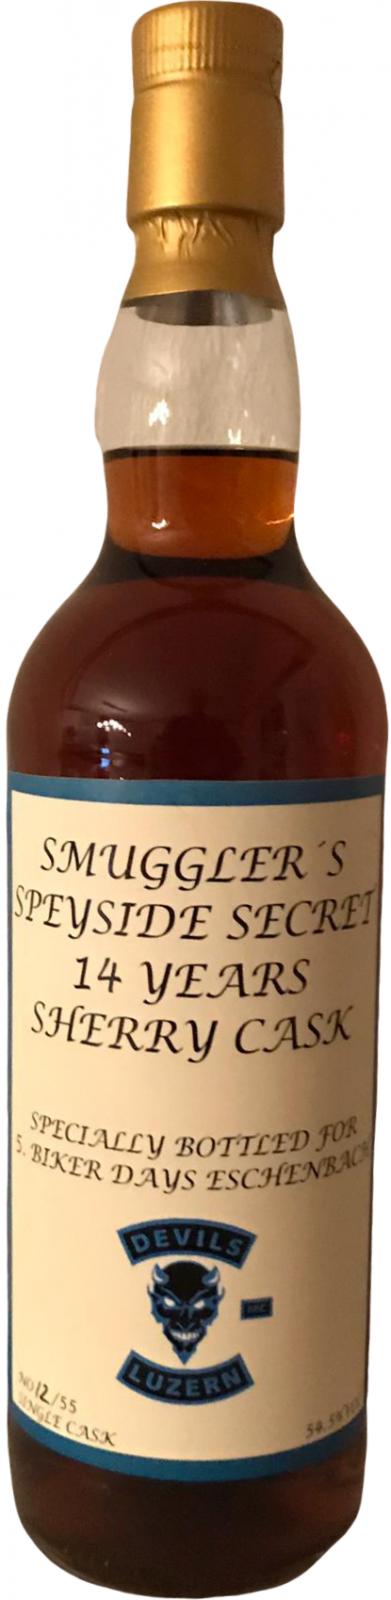 Speyside Secret 14yo SbyL Sherry 54.5% 700ml